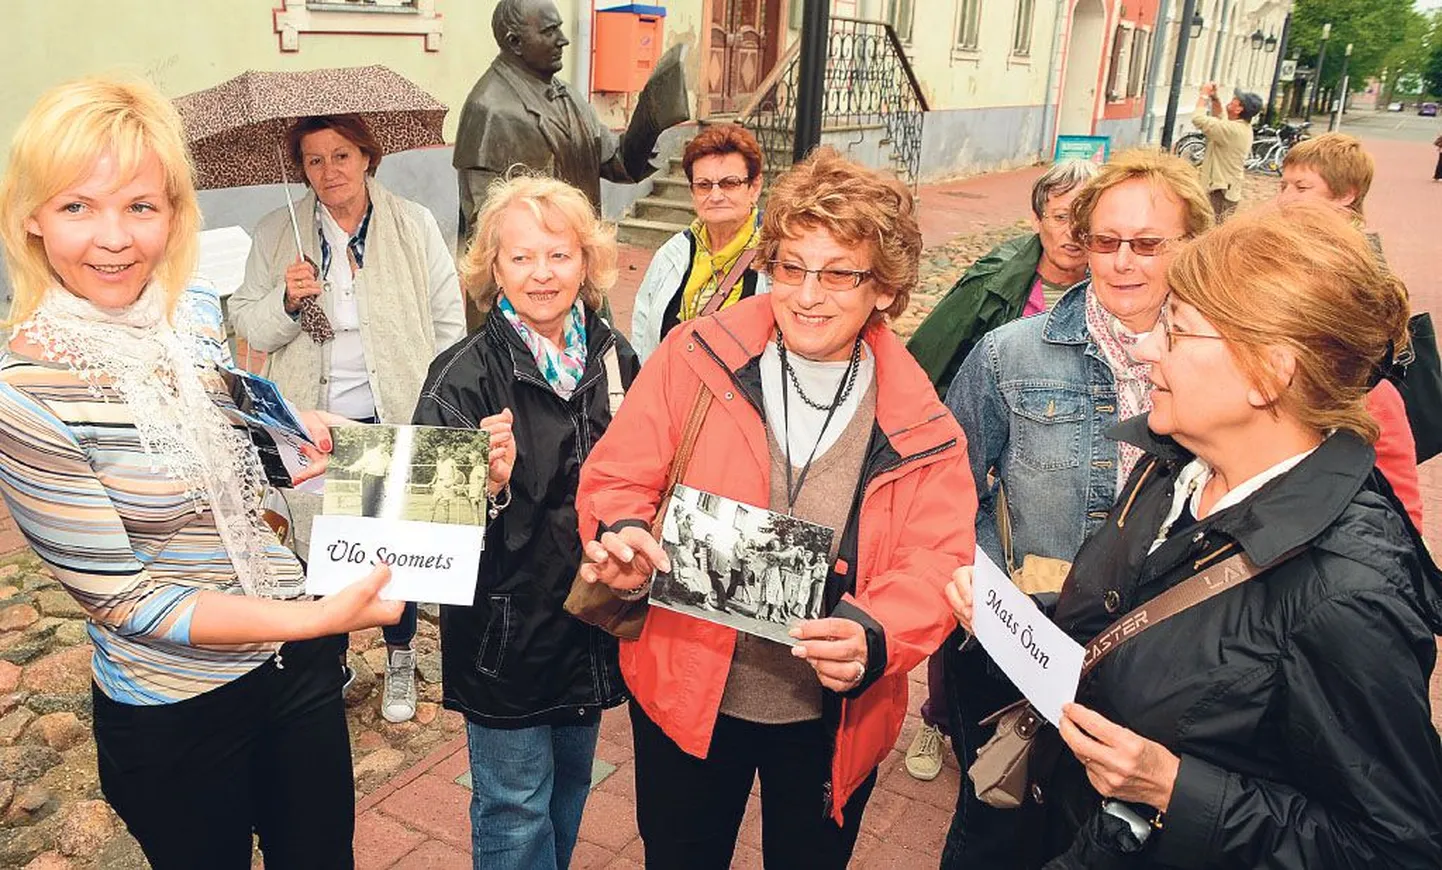 Grupp Jannseni kuju uudistanud prantsuse ja šveitsi turiste kuulas Pärnu linnavalitsuse arenguteenistuse juhataja Anneli Lepa (vasemal) jutu ära ja nõustus hea meelega olema fortuunaks ning loosima fotograafidele taaslavastatavad pildid.